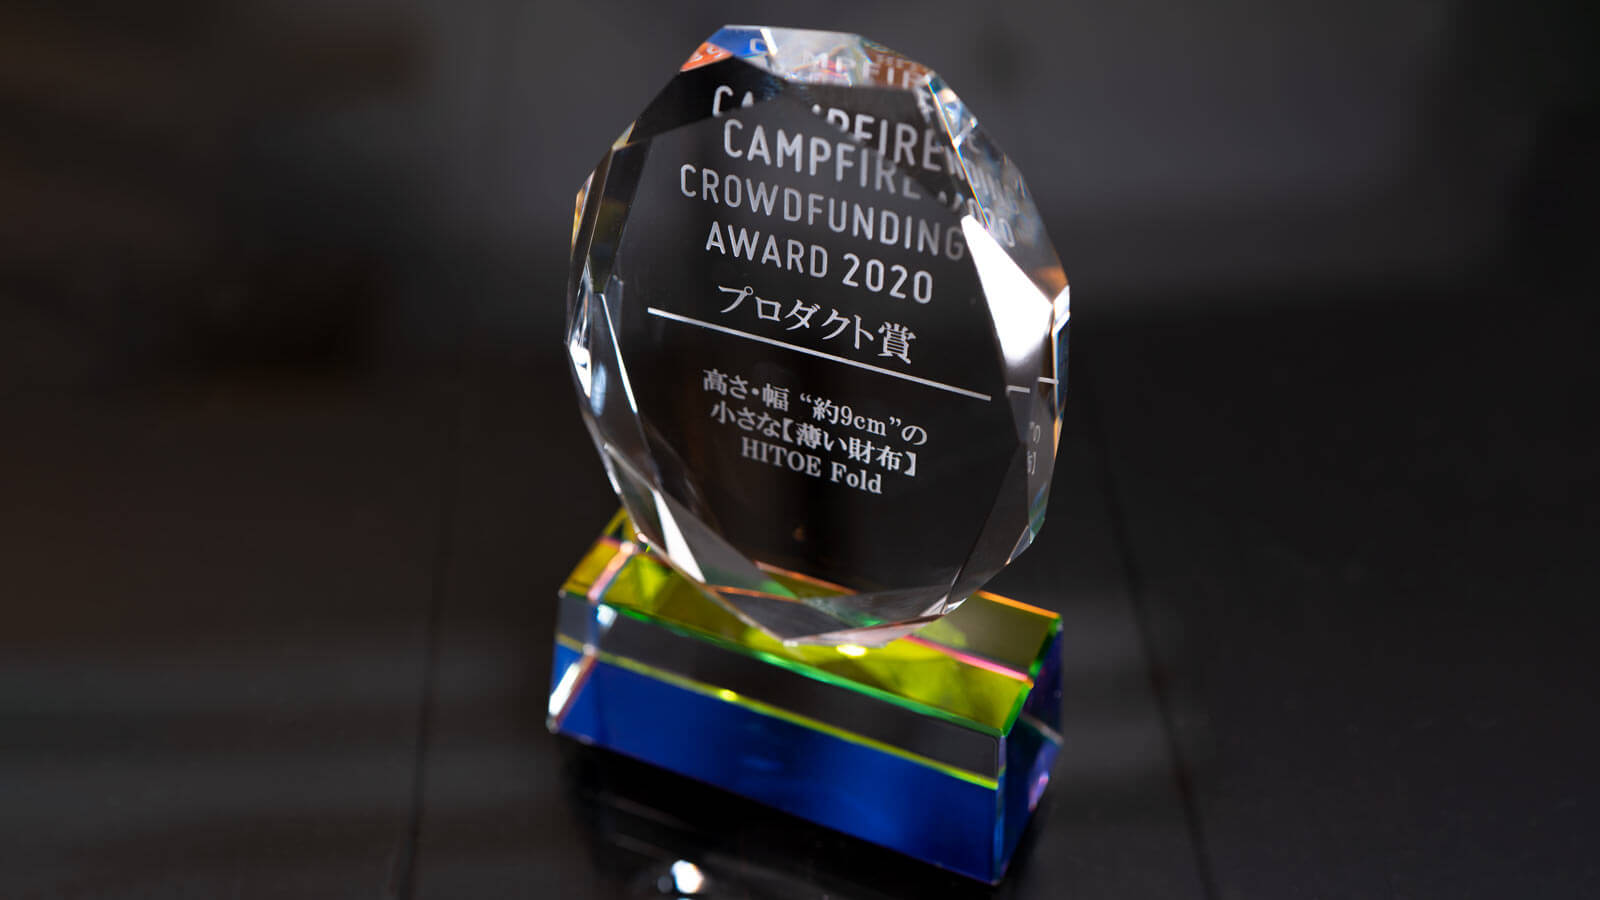 CAMPFIREクラウドファンディングアワード2020受賞